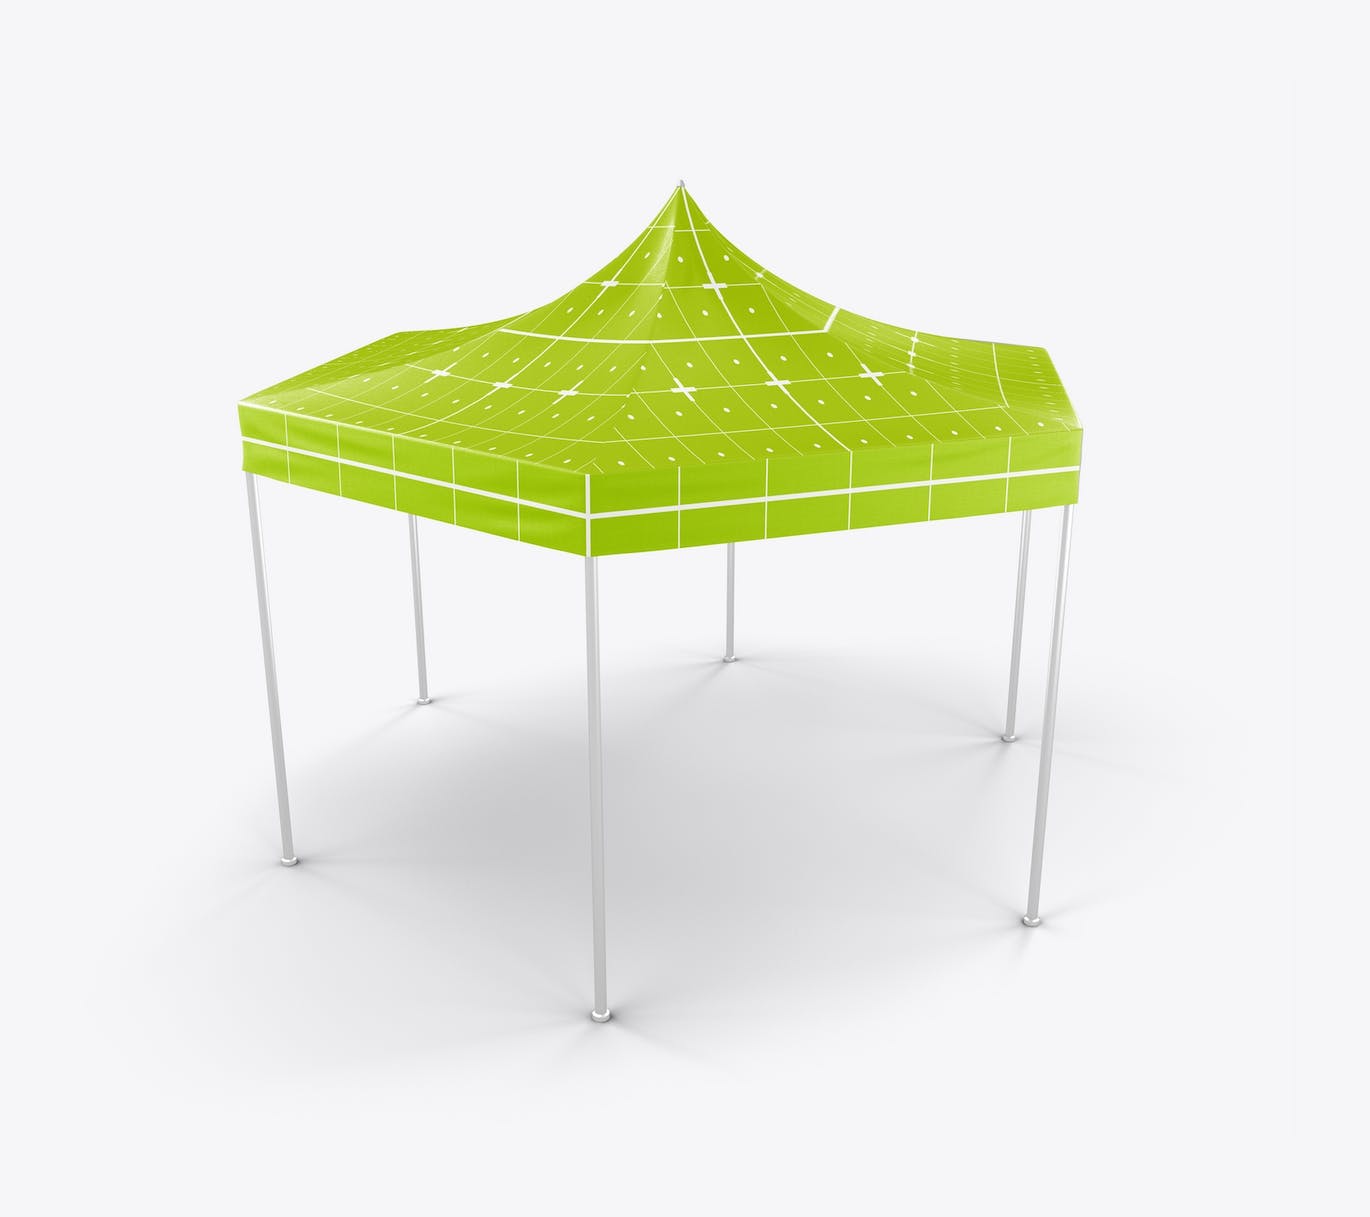 织物展示帐篷样机素材 Fabric Display Tent Mockup